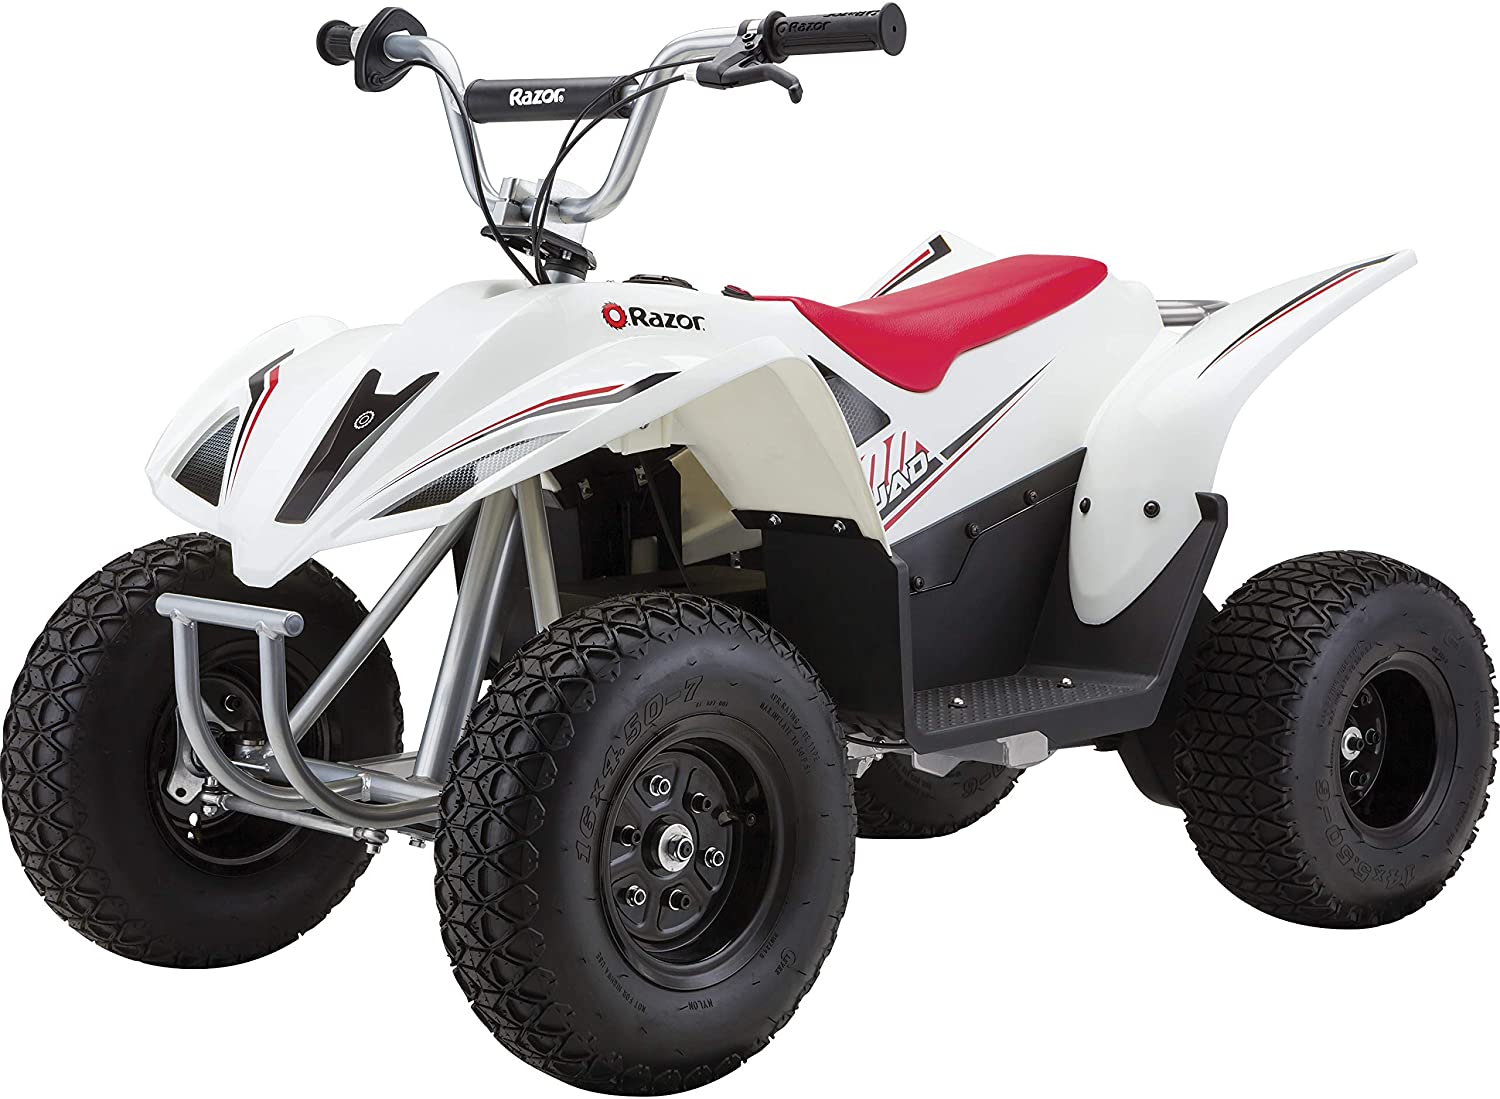 The Razor Dirt Quad Electric ATV